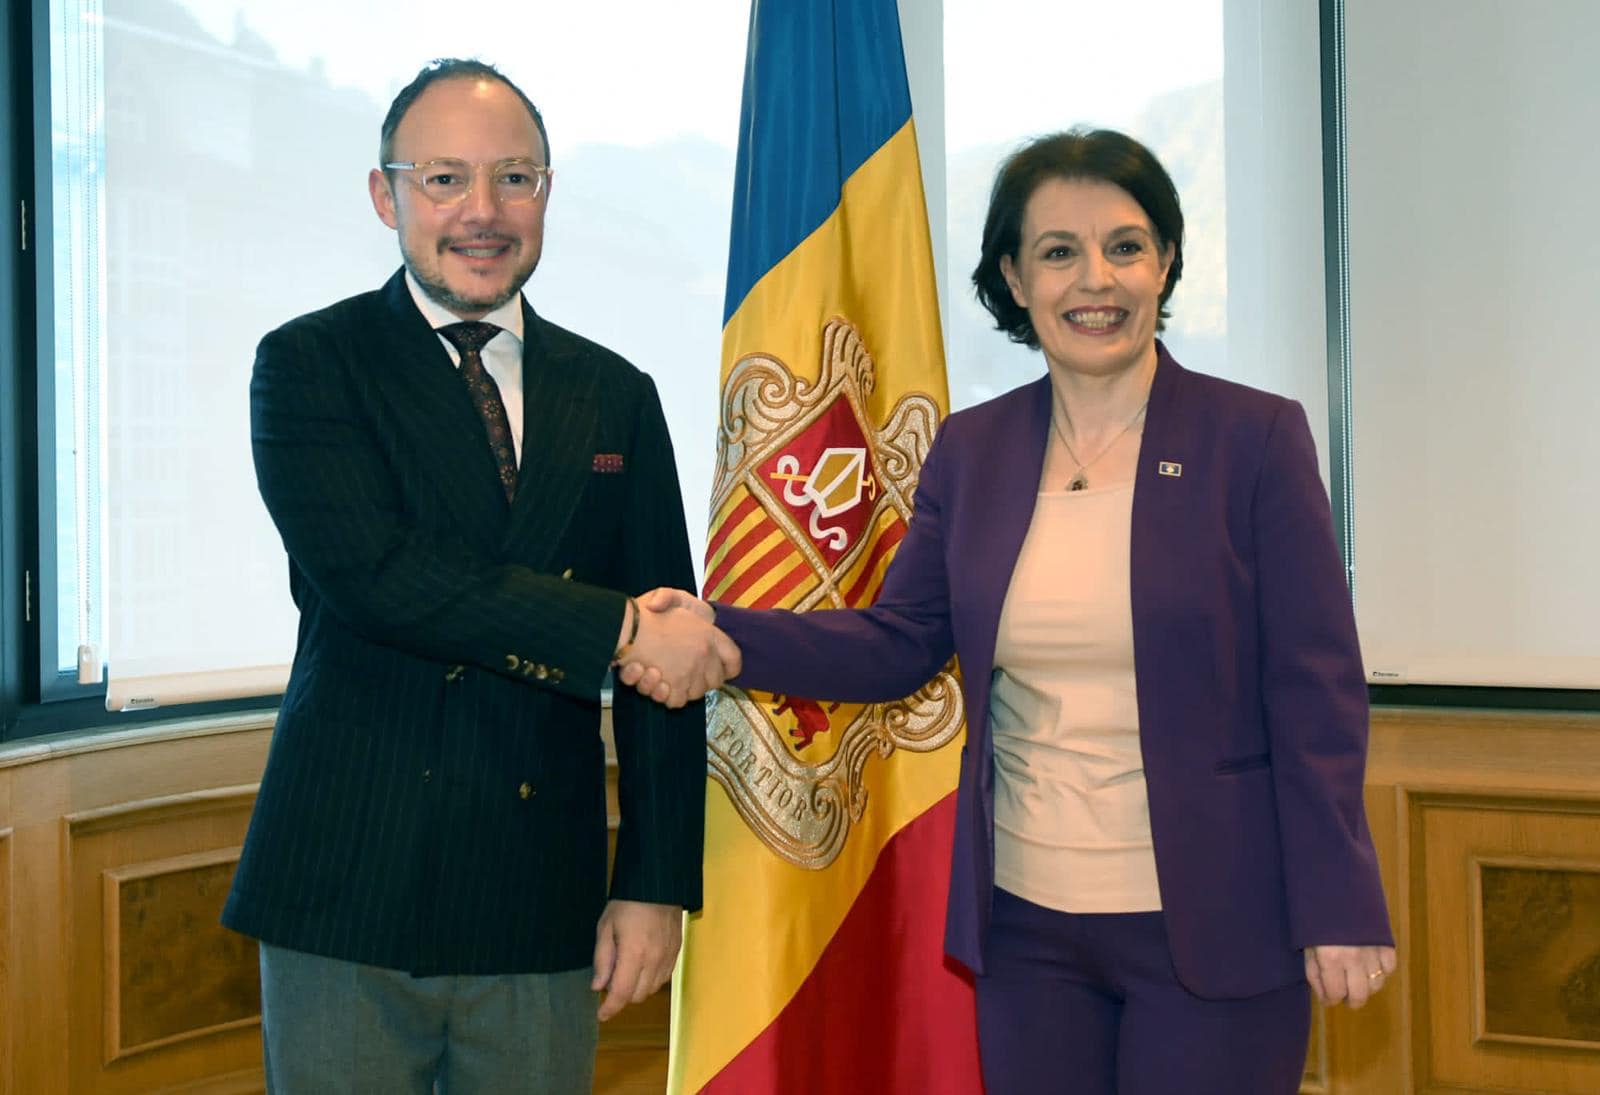 Gërvalla pritet nga kryeministri i Andorrës, rikonfirmohet mbështetja për anëtarësim në organizata ndërkombëtare